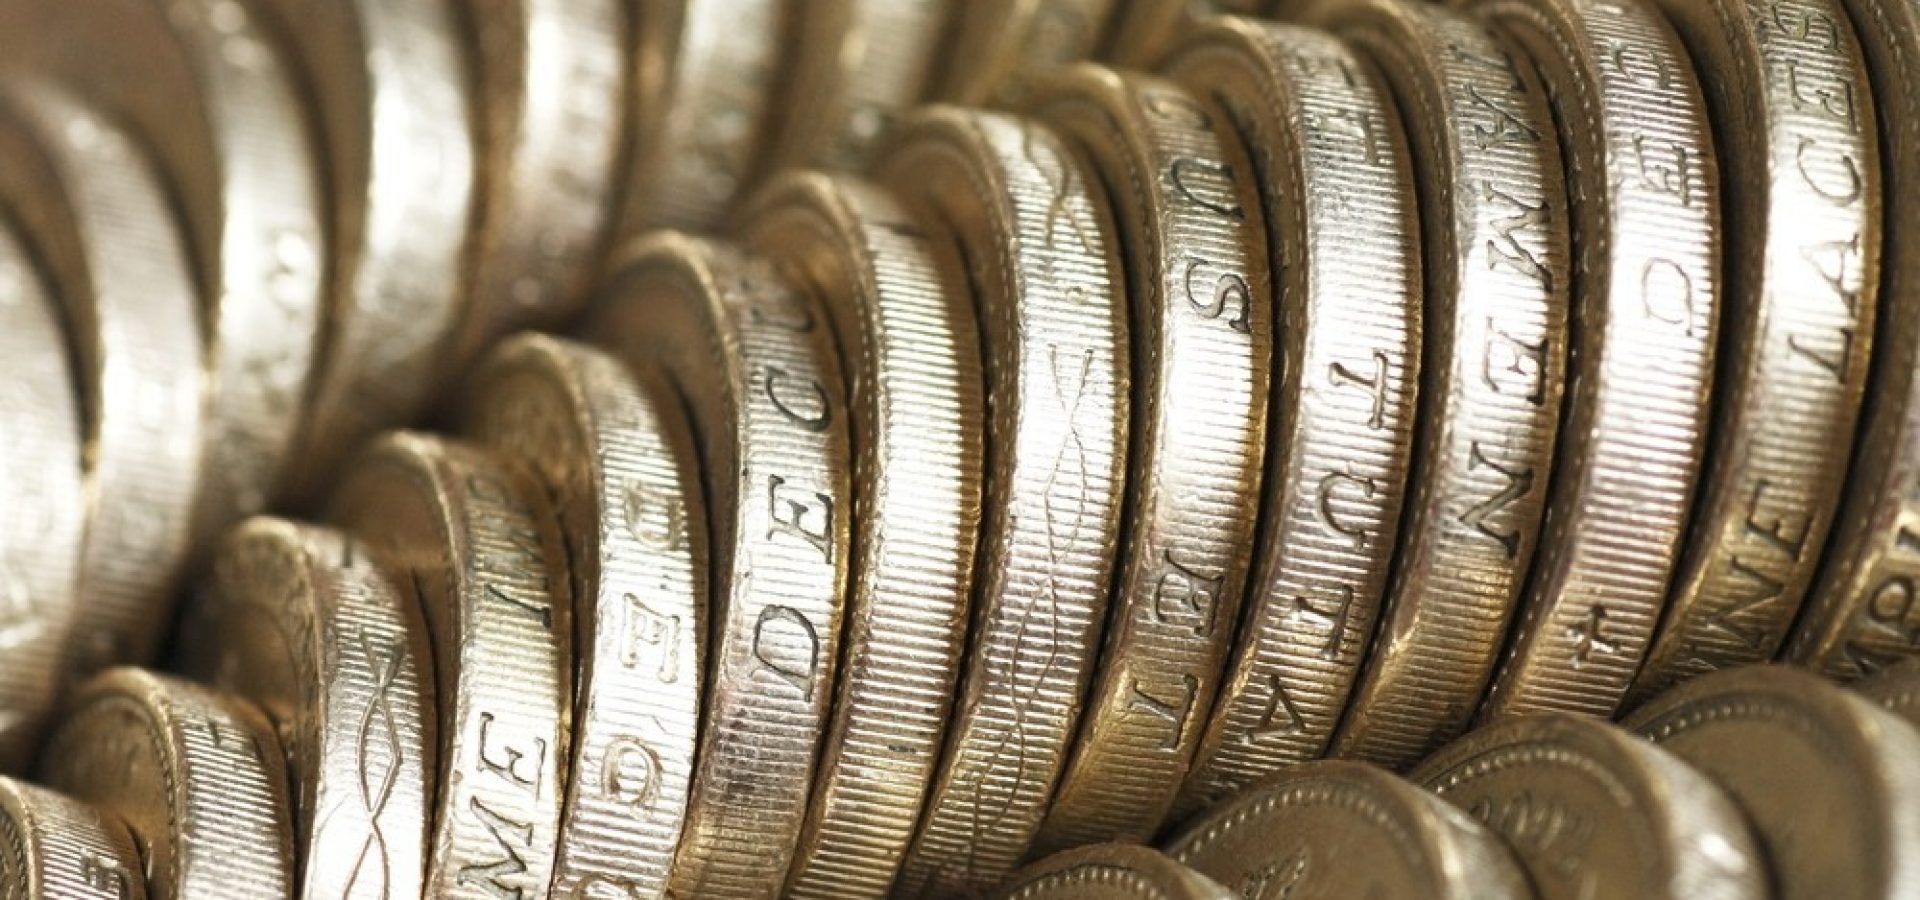 Wibest – Pound Exchange: Pound sterling coins.